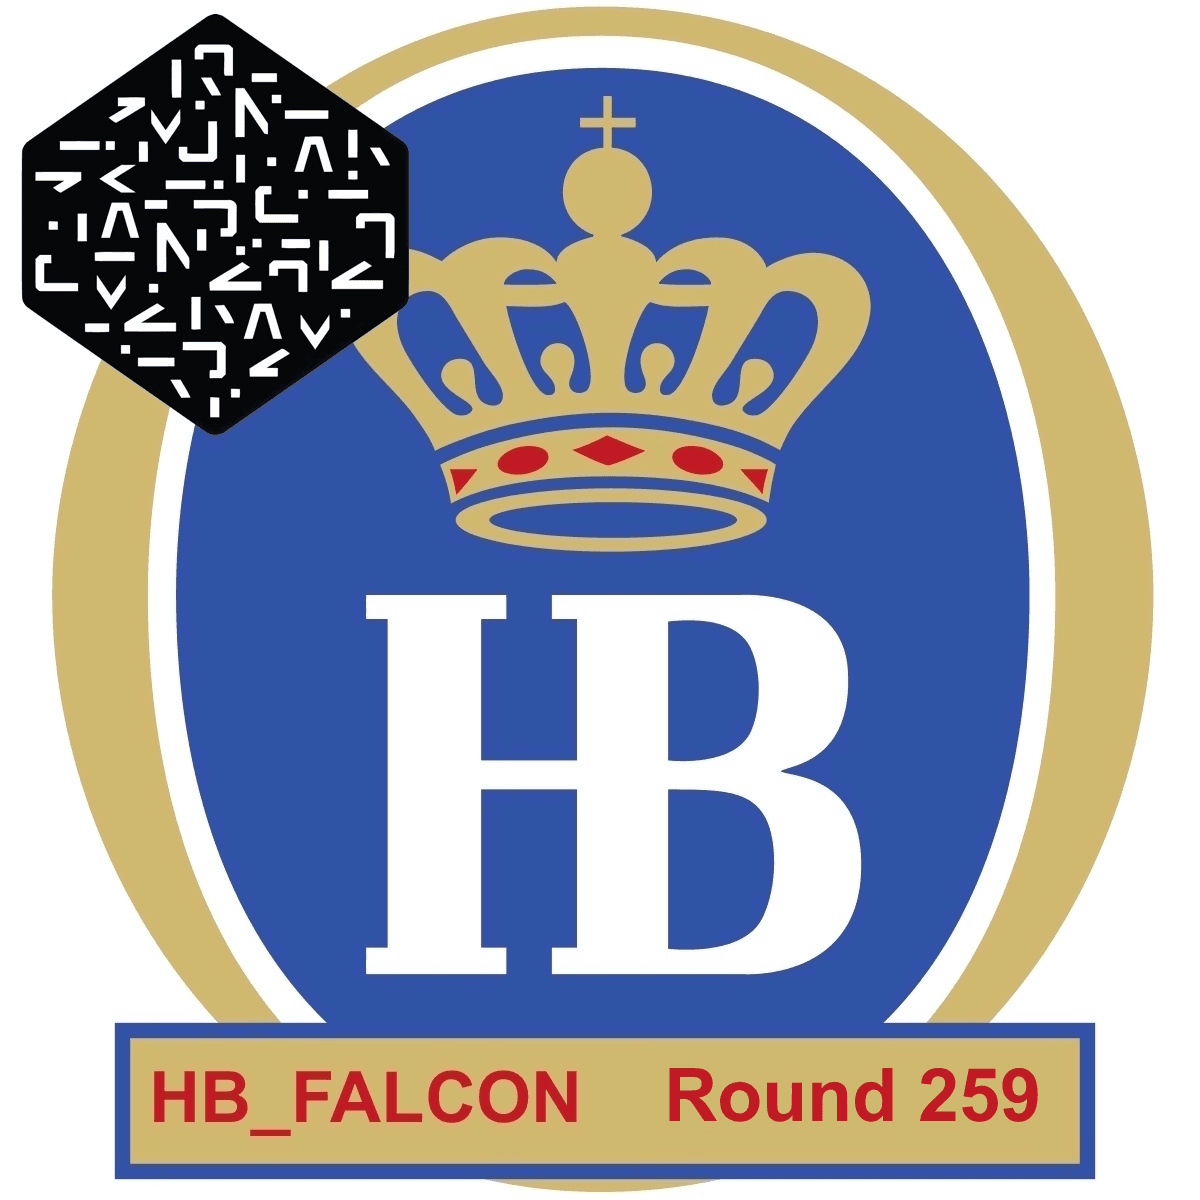 HB_FALCON Round 259 Numerai